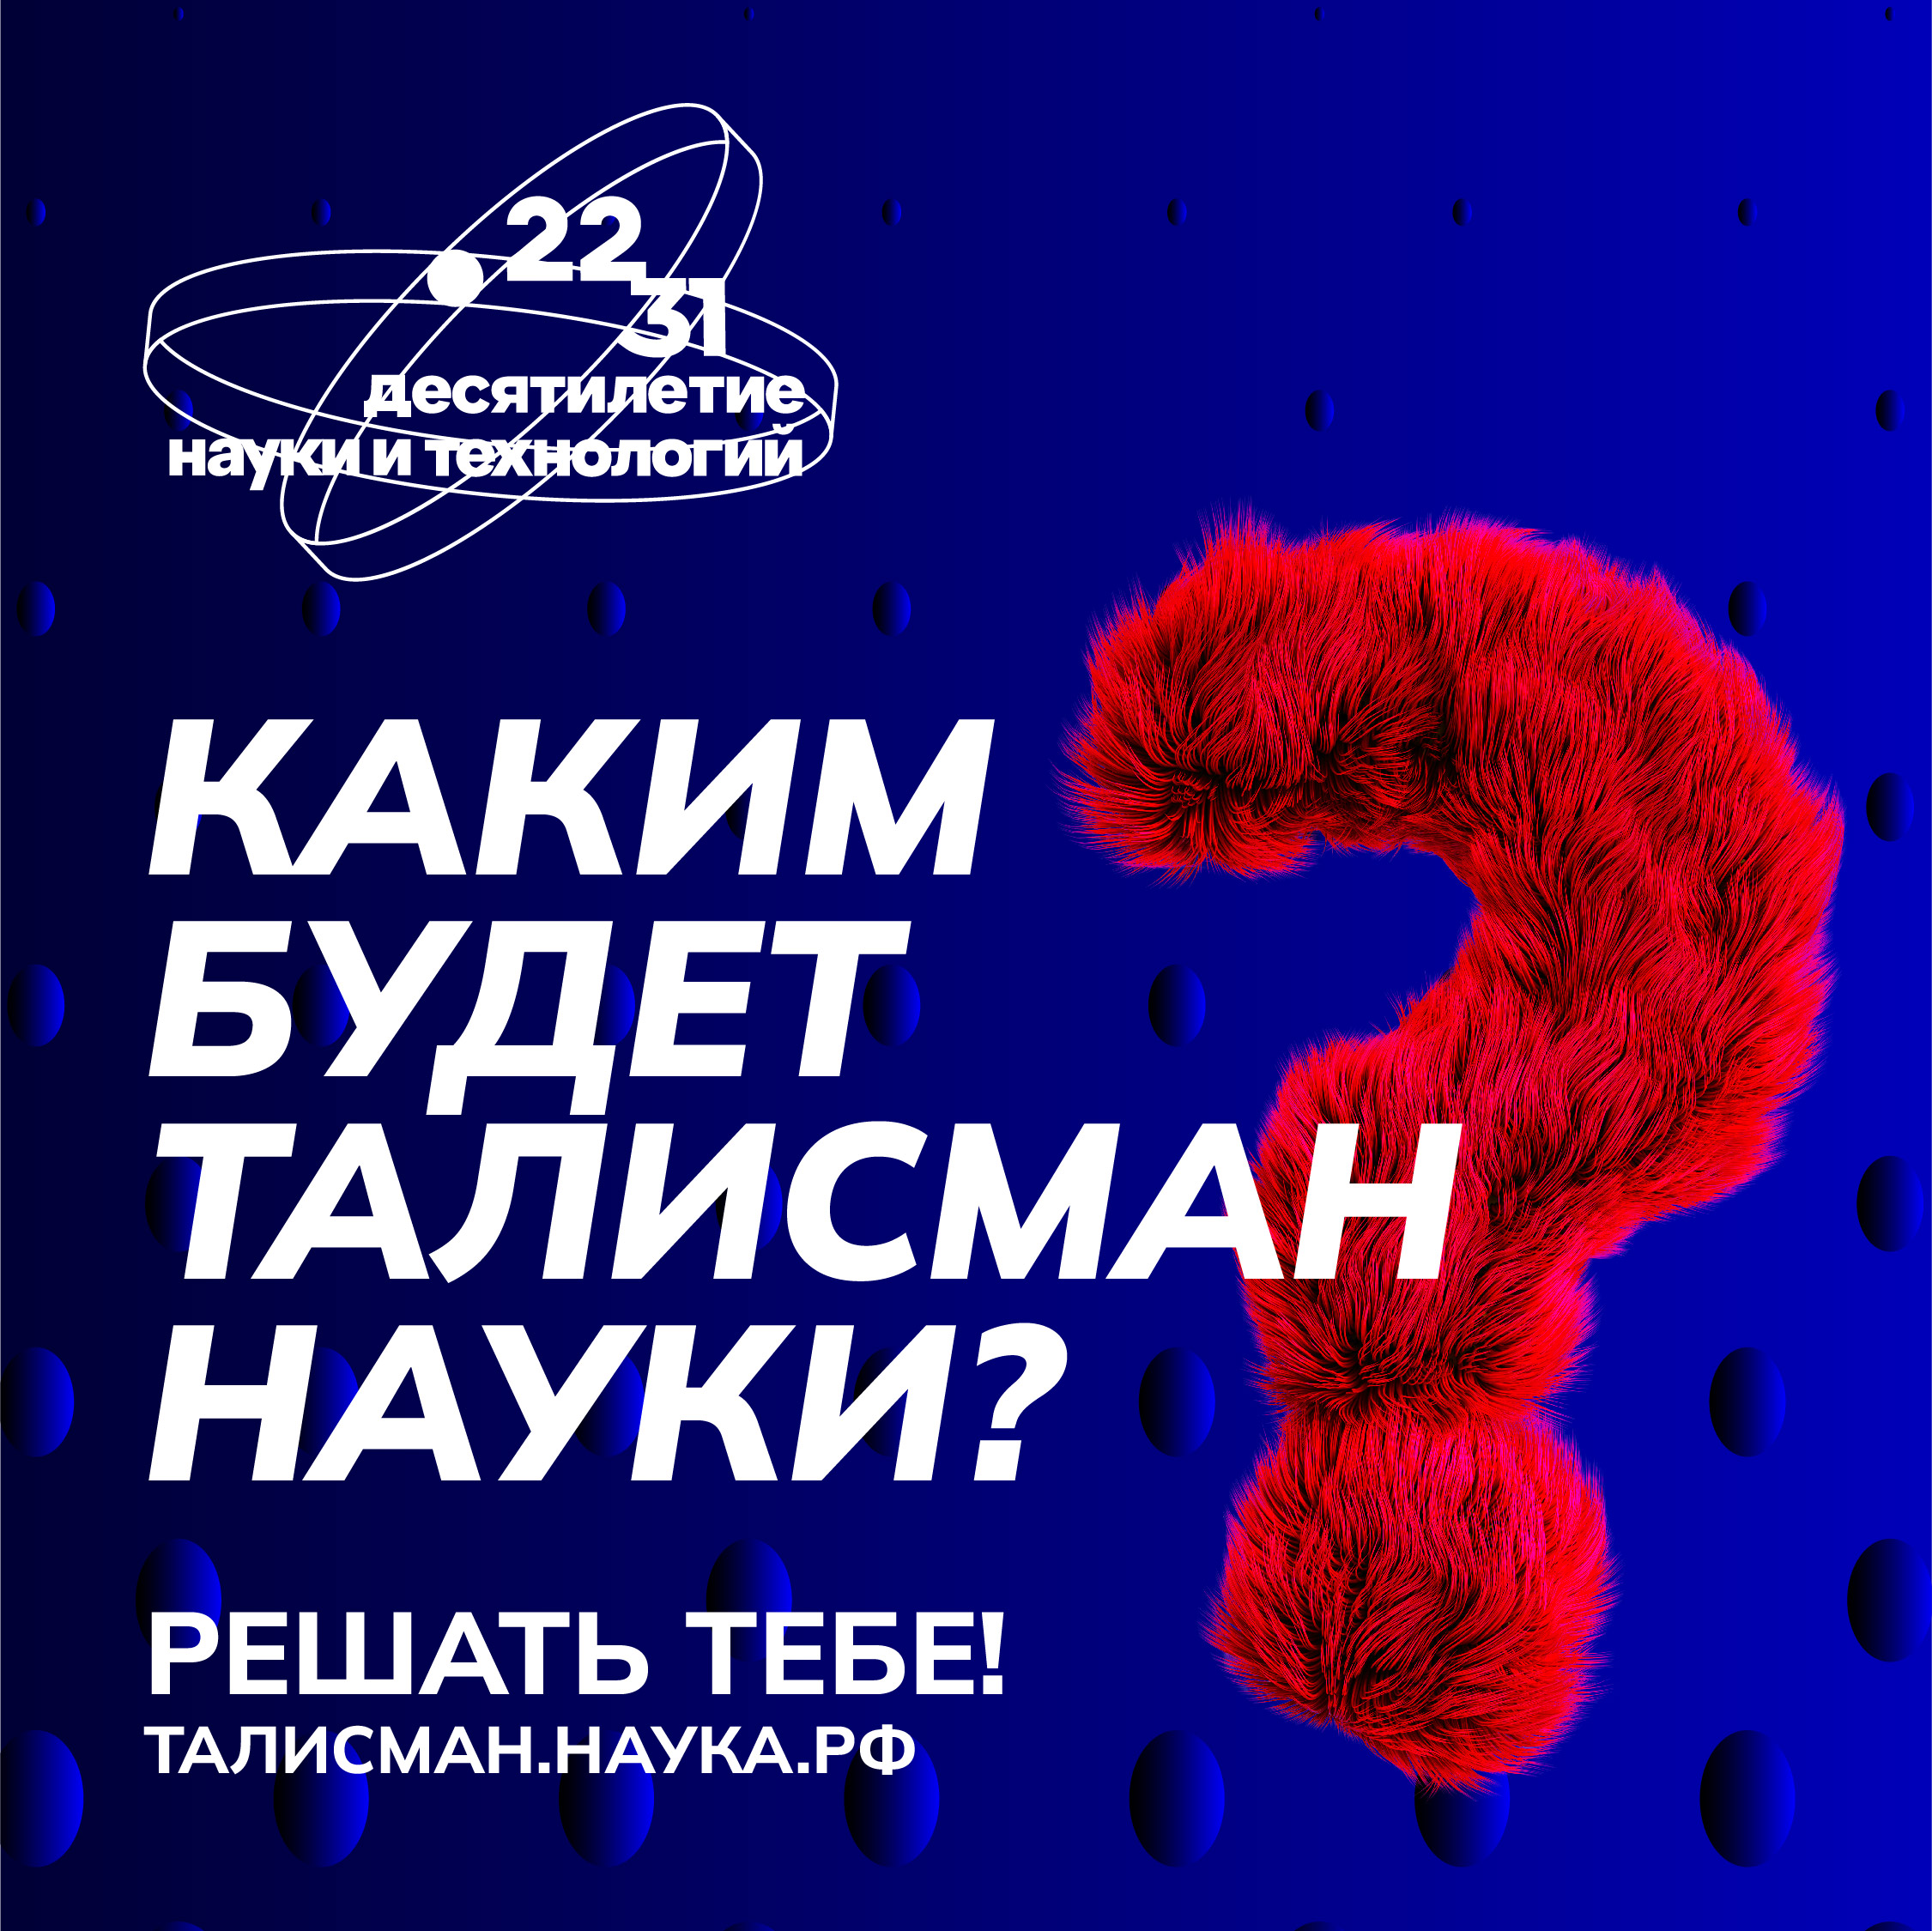 В России стартовал конкурс на выбор Талисмана Десятилетия науки и технологий 